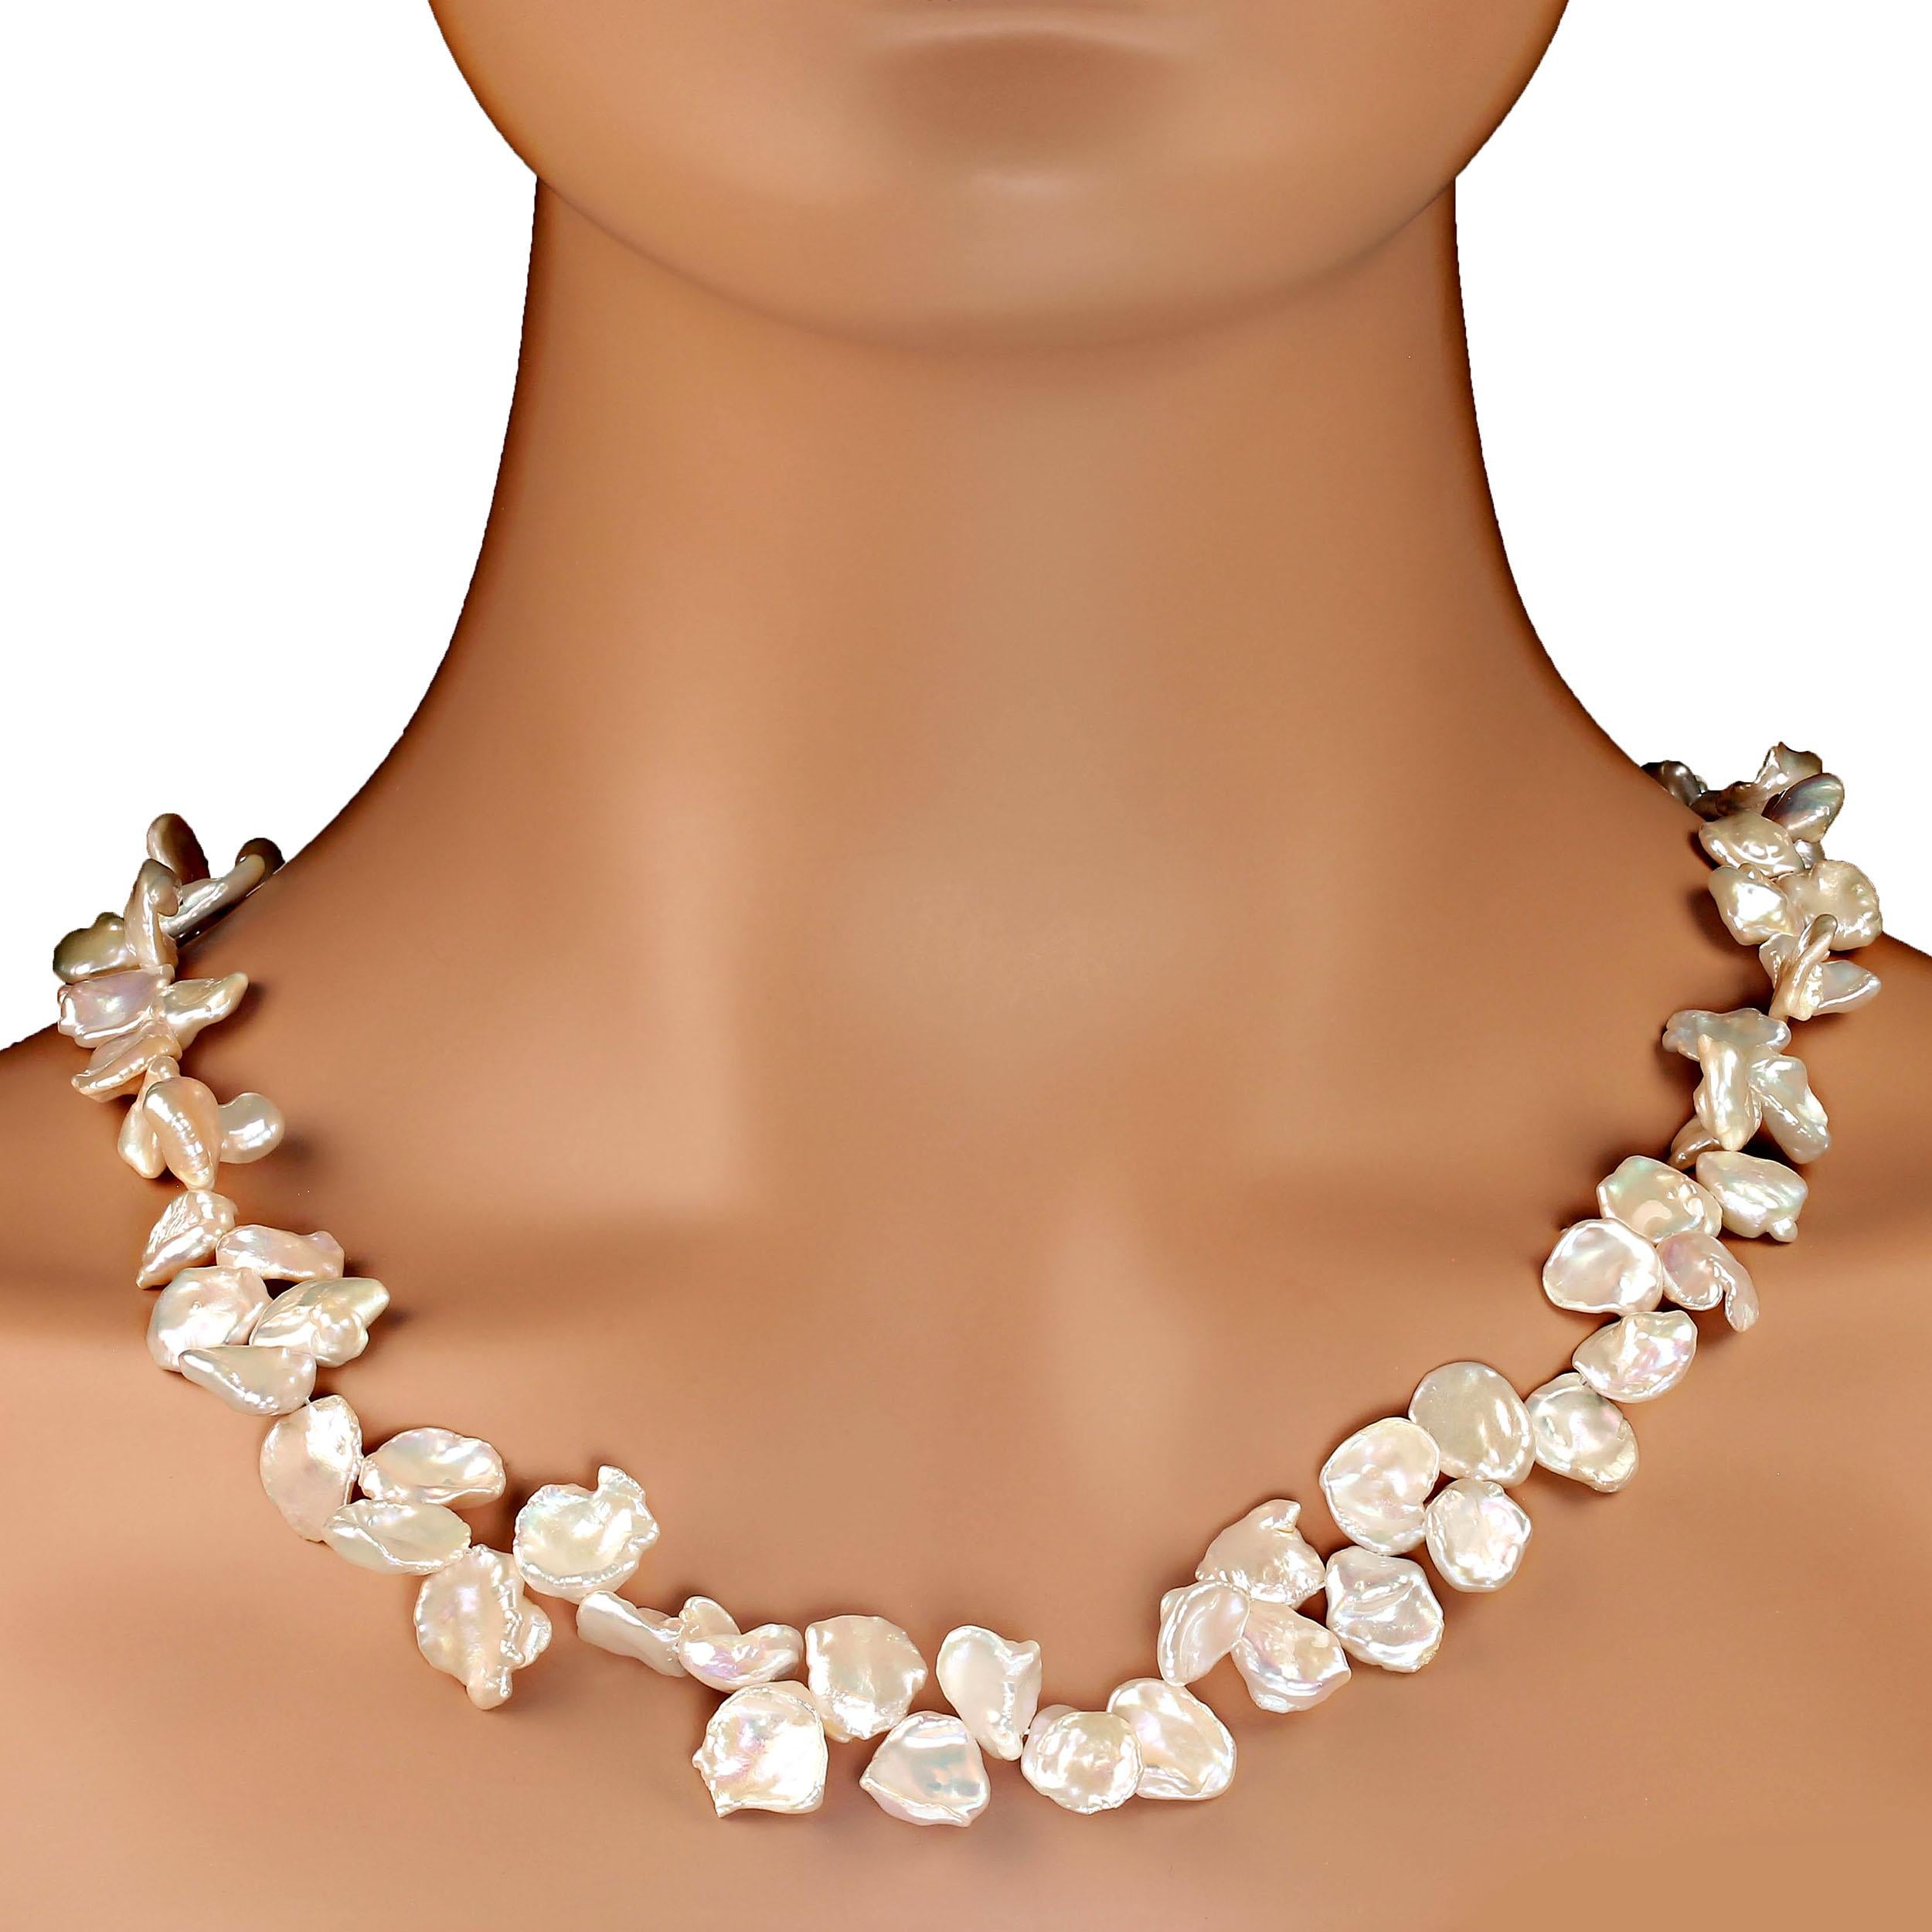 Collier de 23 pouces en perles de Keshi blanches irisées, délicatement graduées de 9 à 14 mm.  Ces magnifiques perles rondes et plates sont très agréables à porter. Ils brillent et s'irisent et créent une certaine présence.
Le collier est fixé à